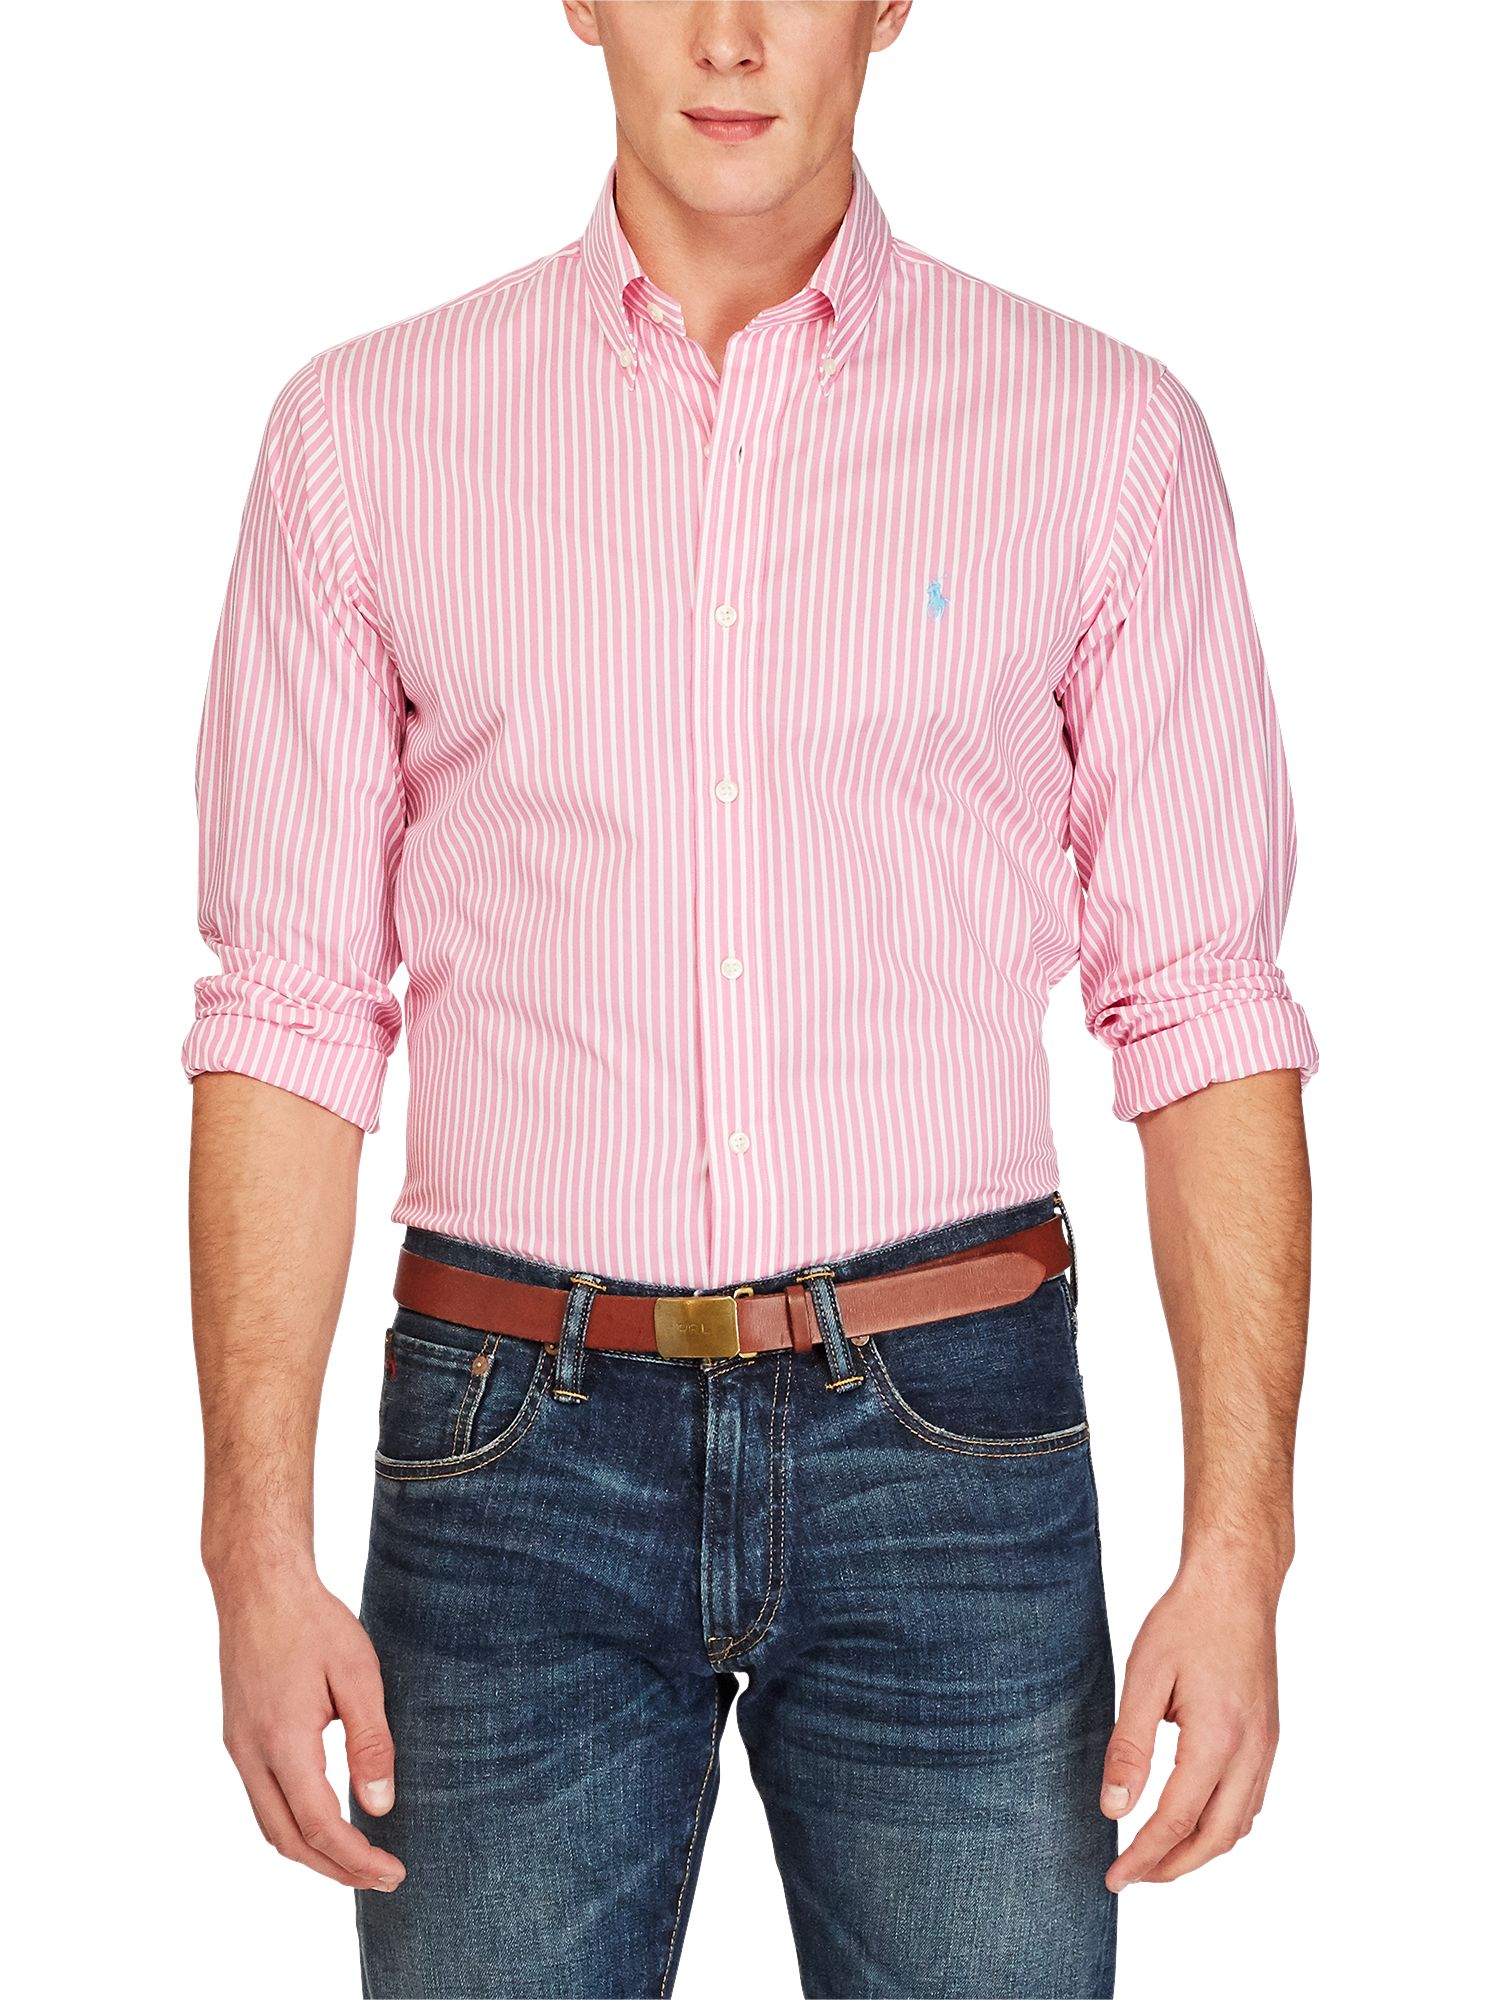 ralph lauren men's pink striped shirt